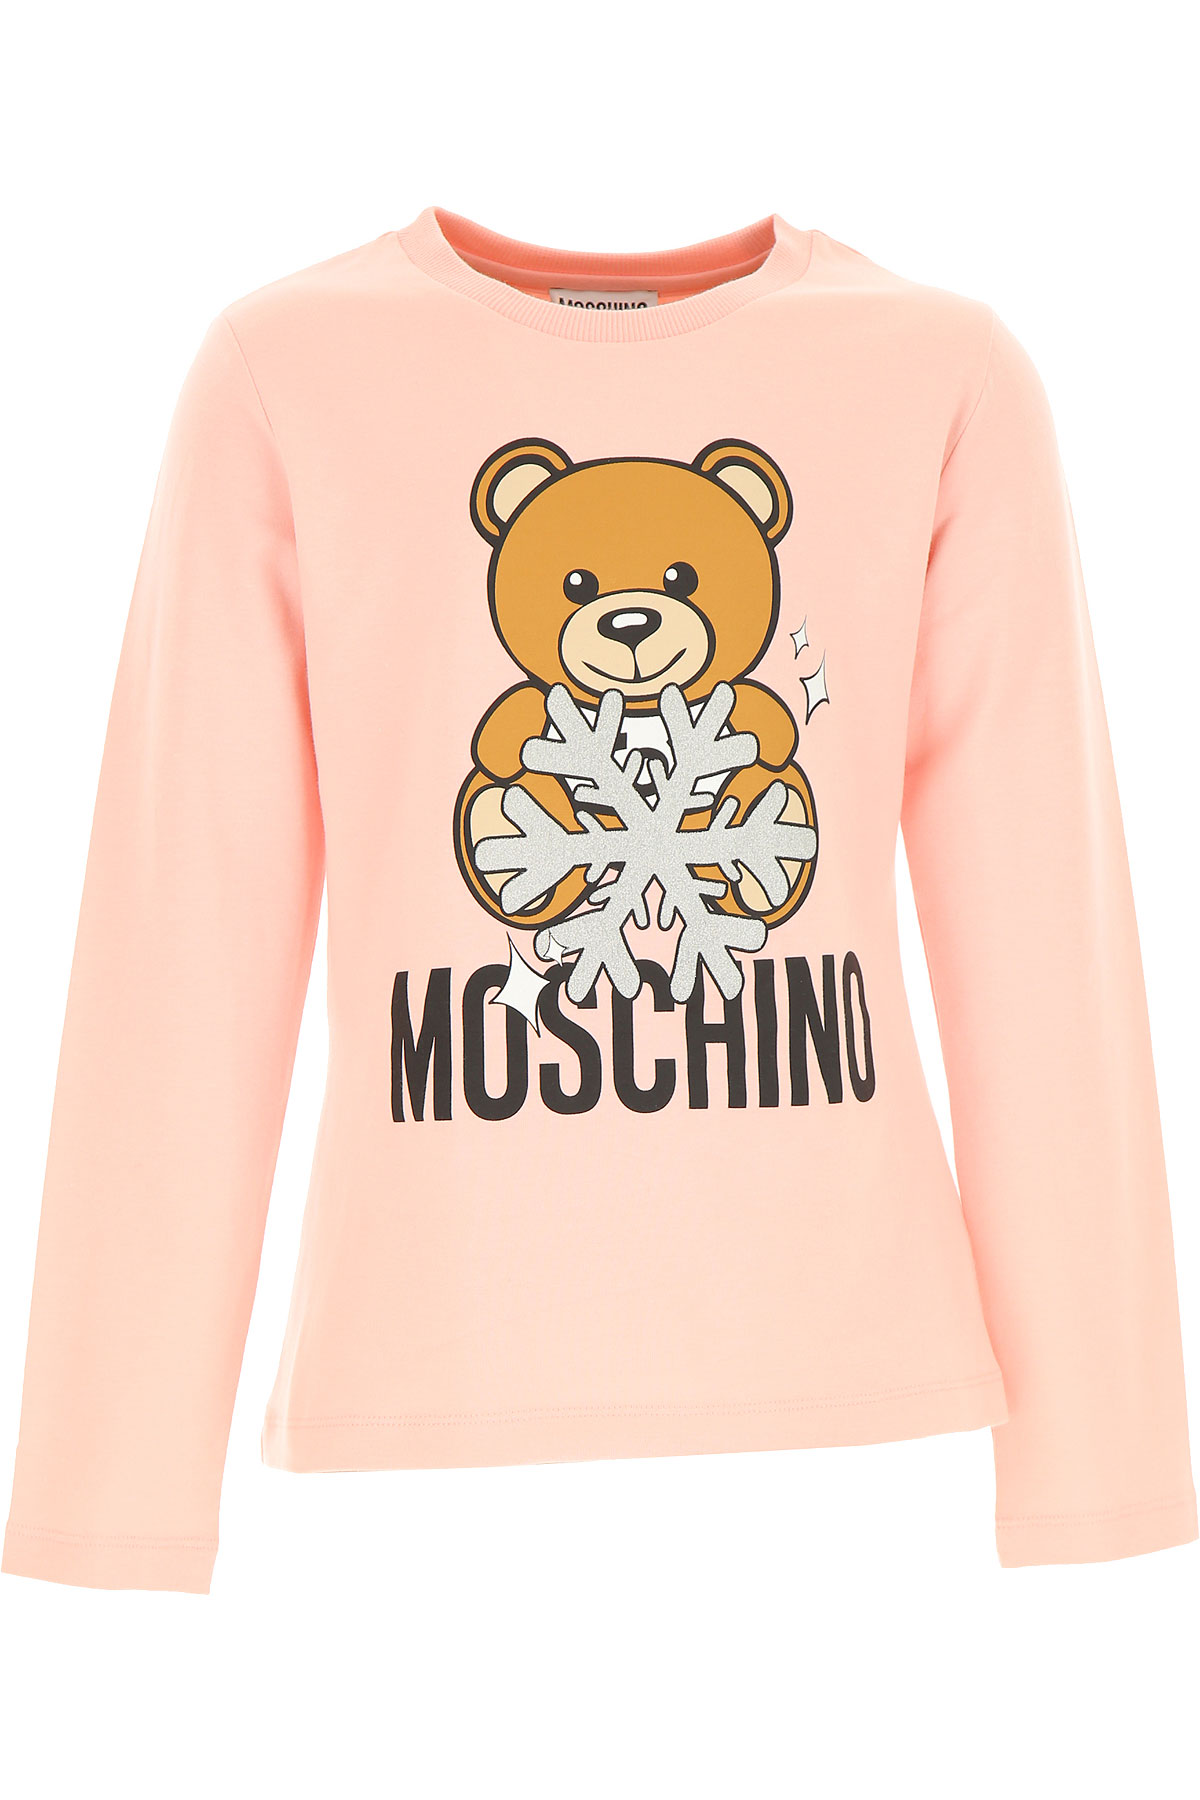 Moschino Kinder T-Shirt für Mädchen Günstig im Sale, Pink, Baumwolle, 2017, 10Y 12Y 4Y 5Y 6Y